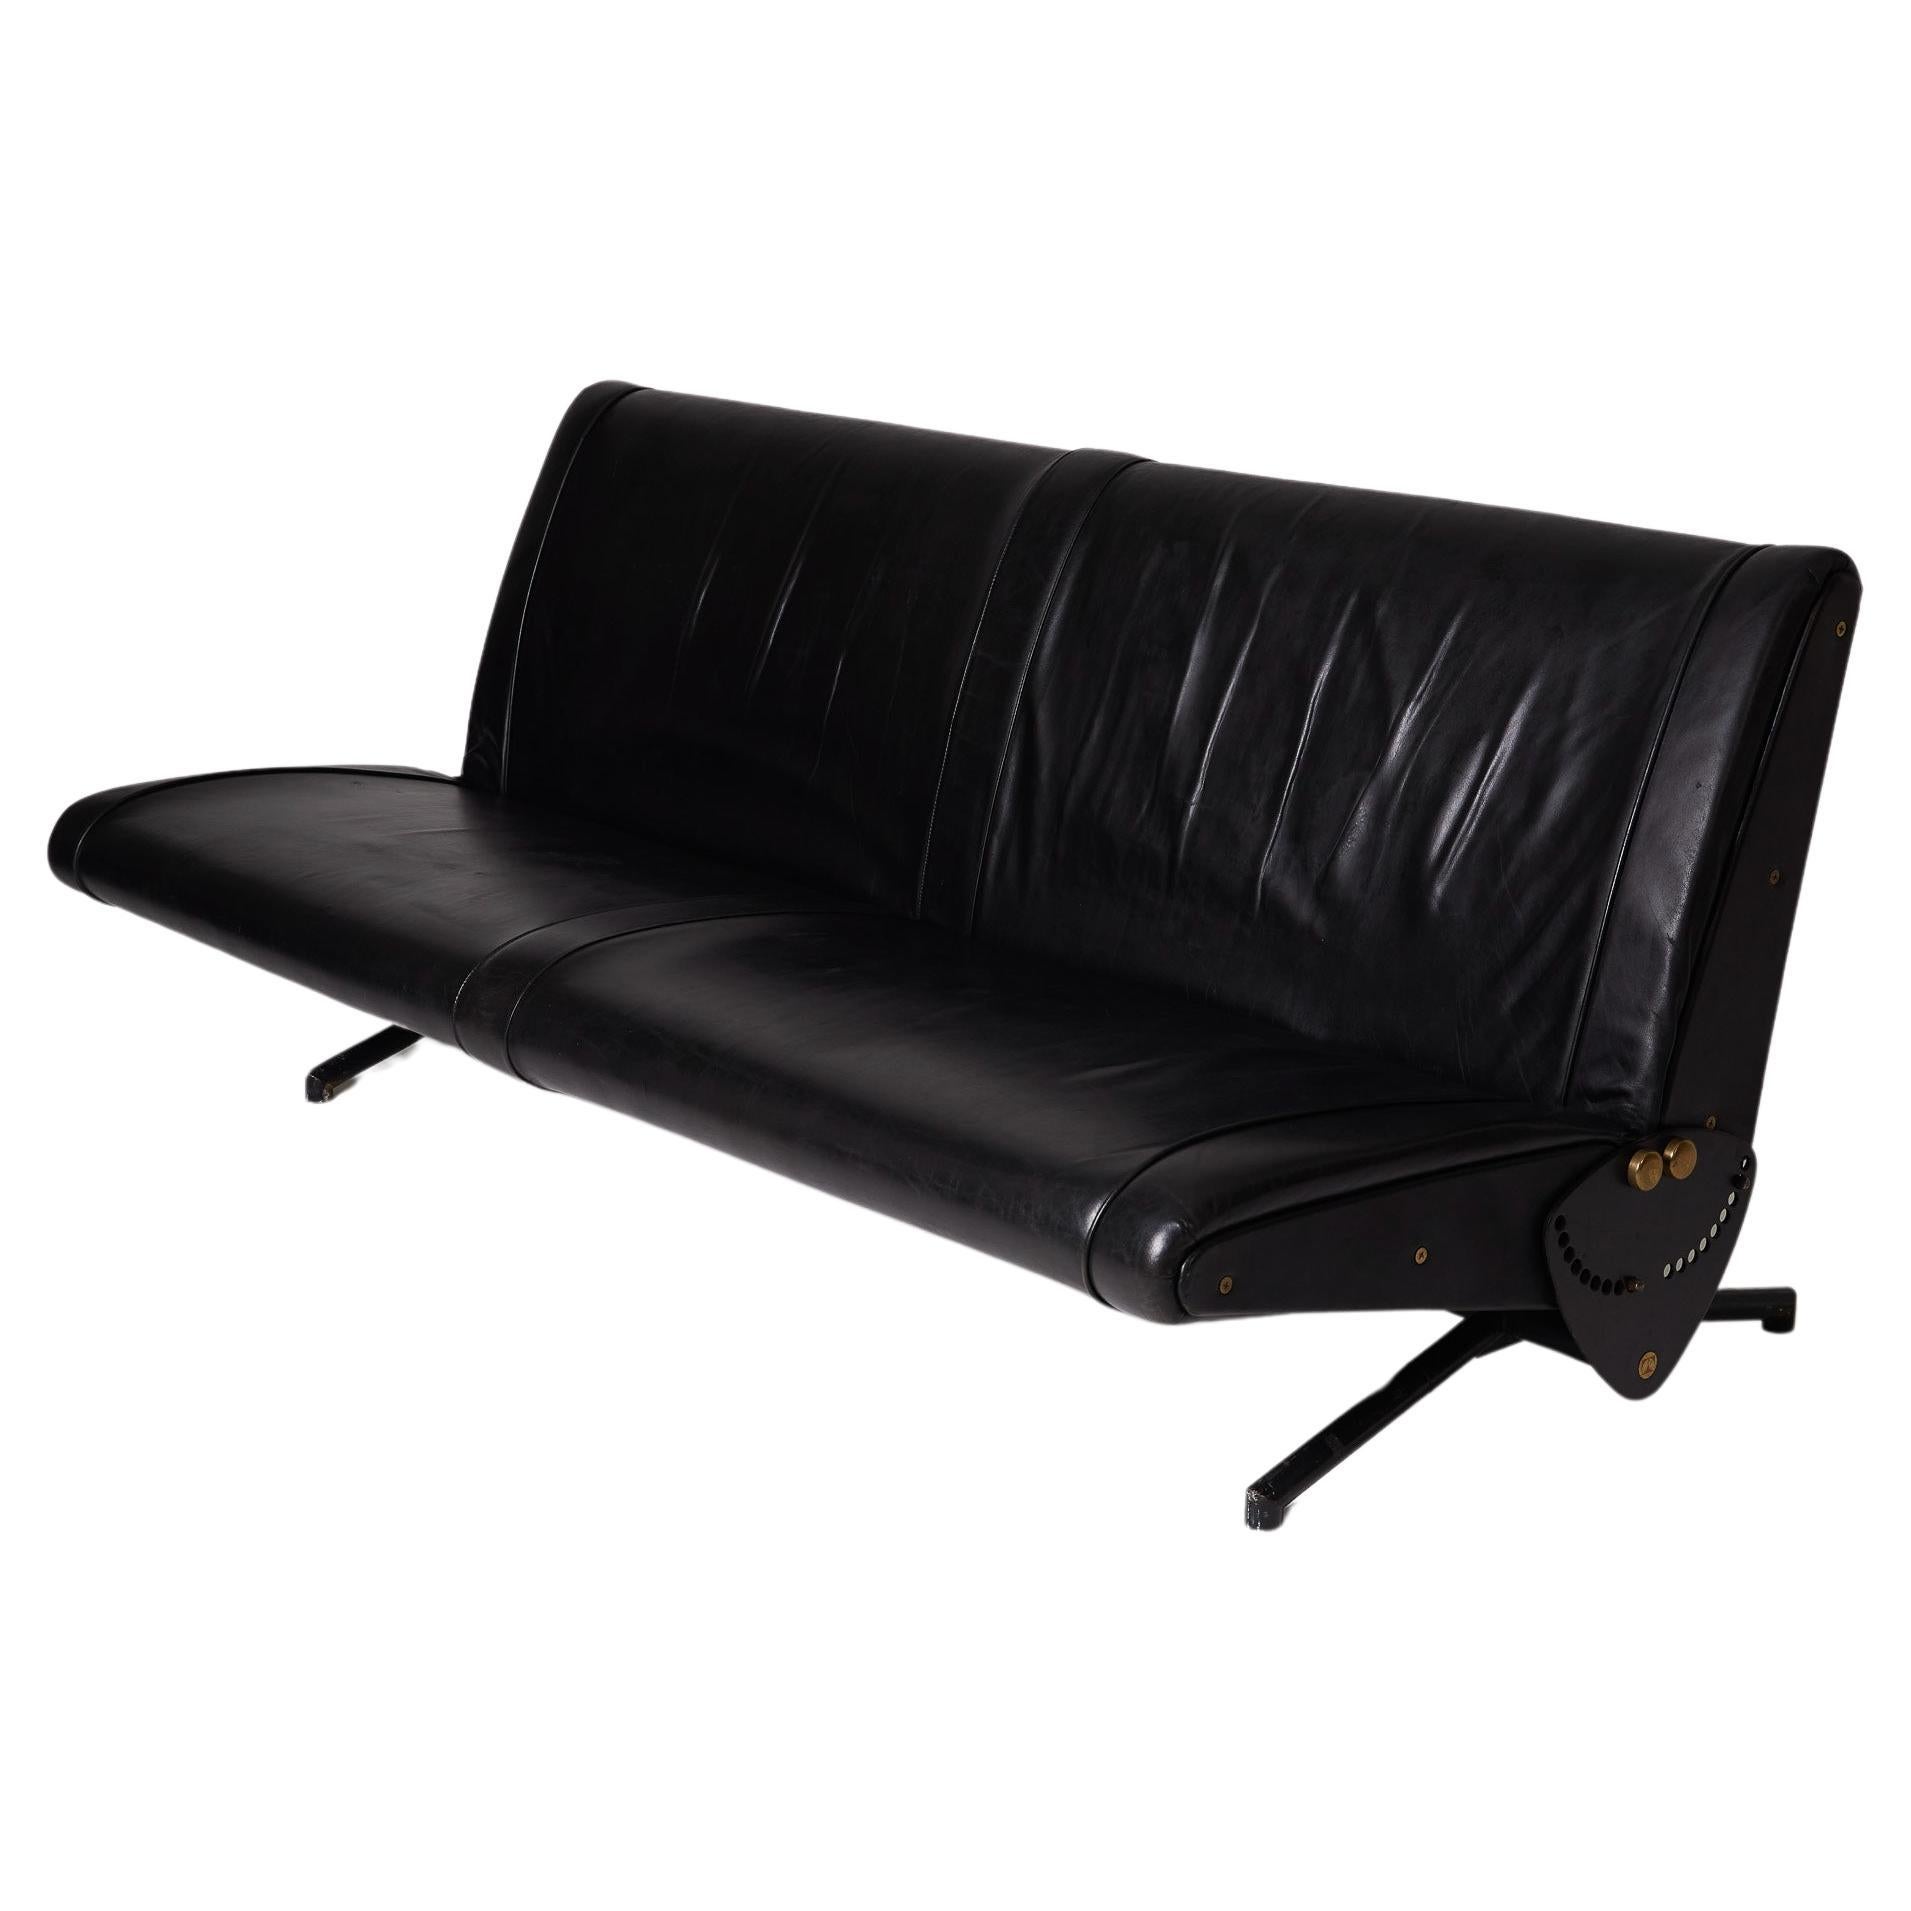  Leather sofa D70 by Osvaldo Borsani For Sale